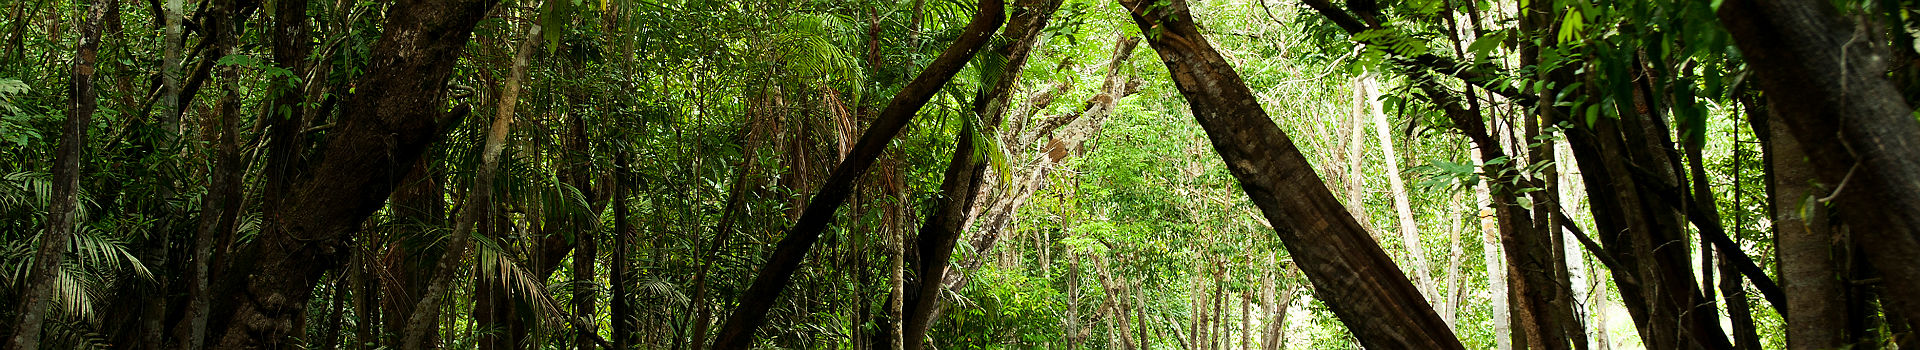 Forêt amazonienne au Brésil